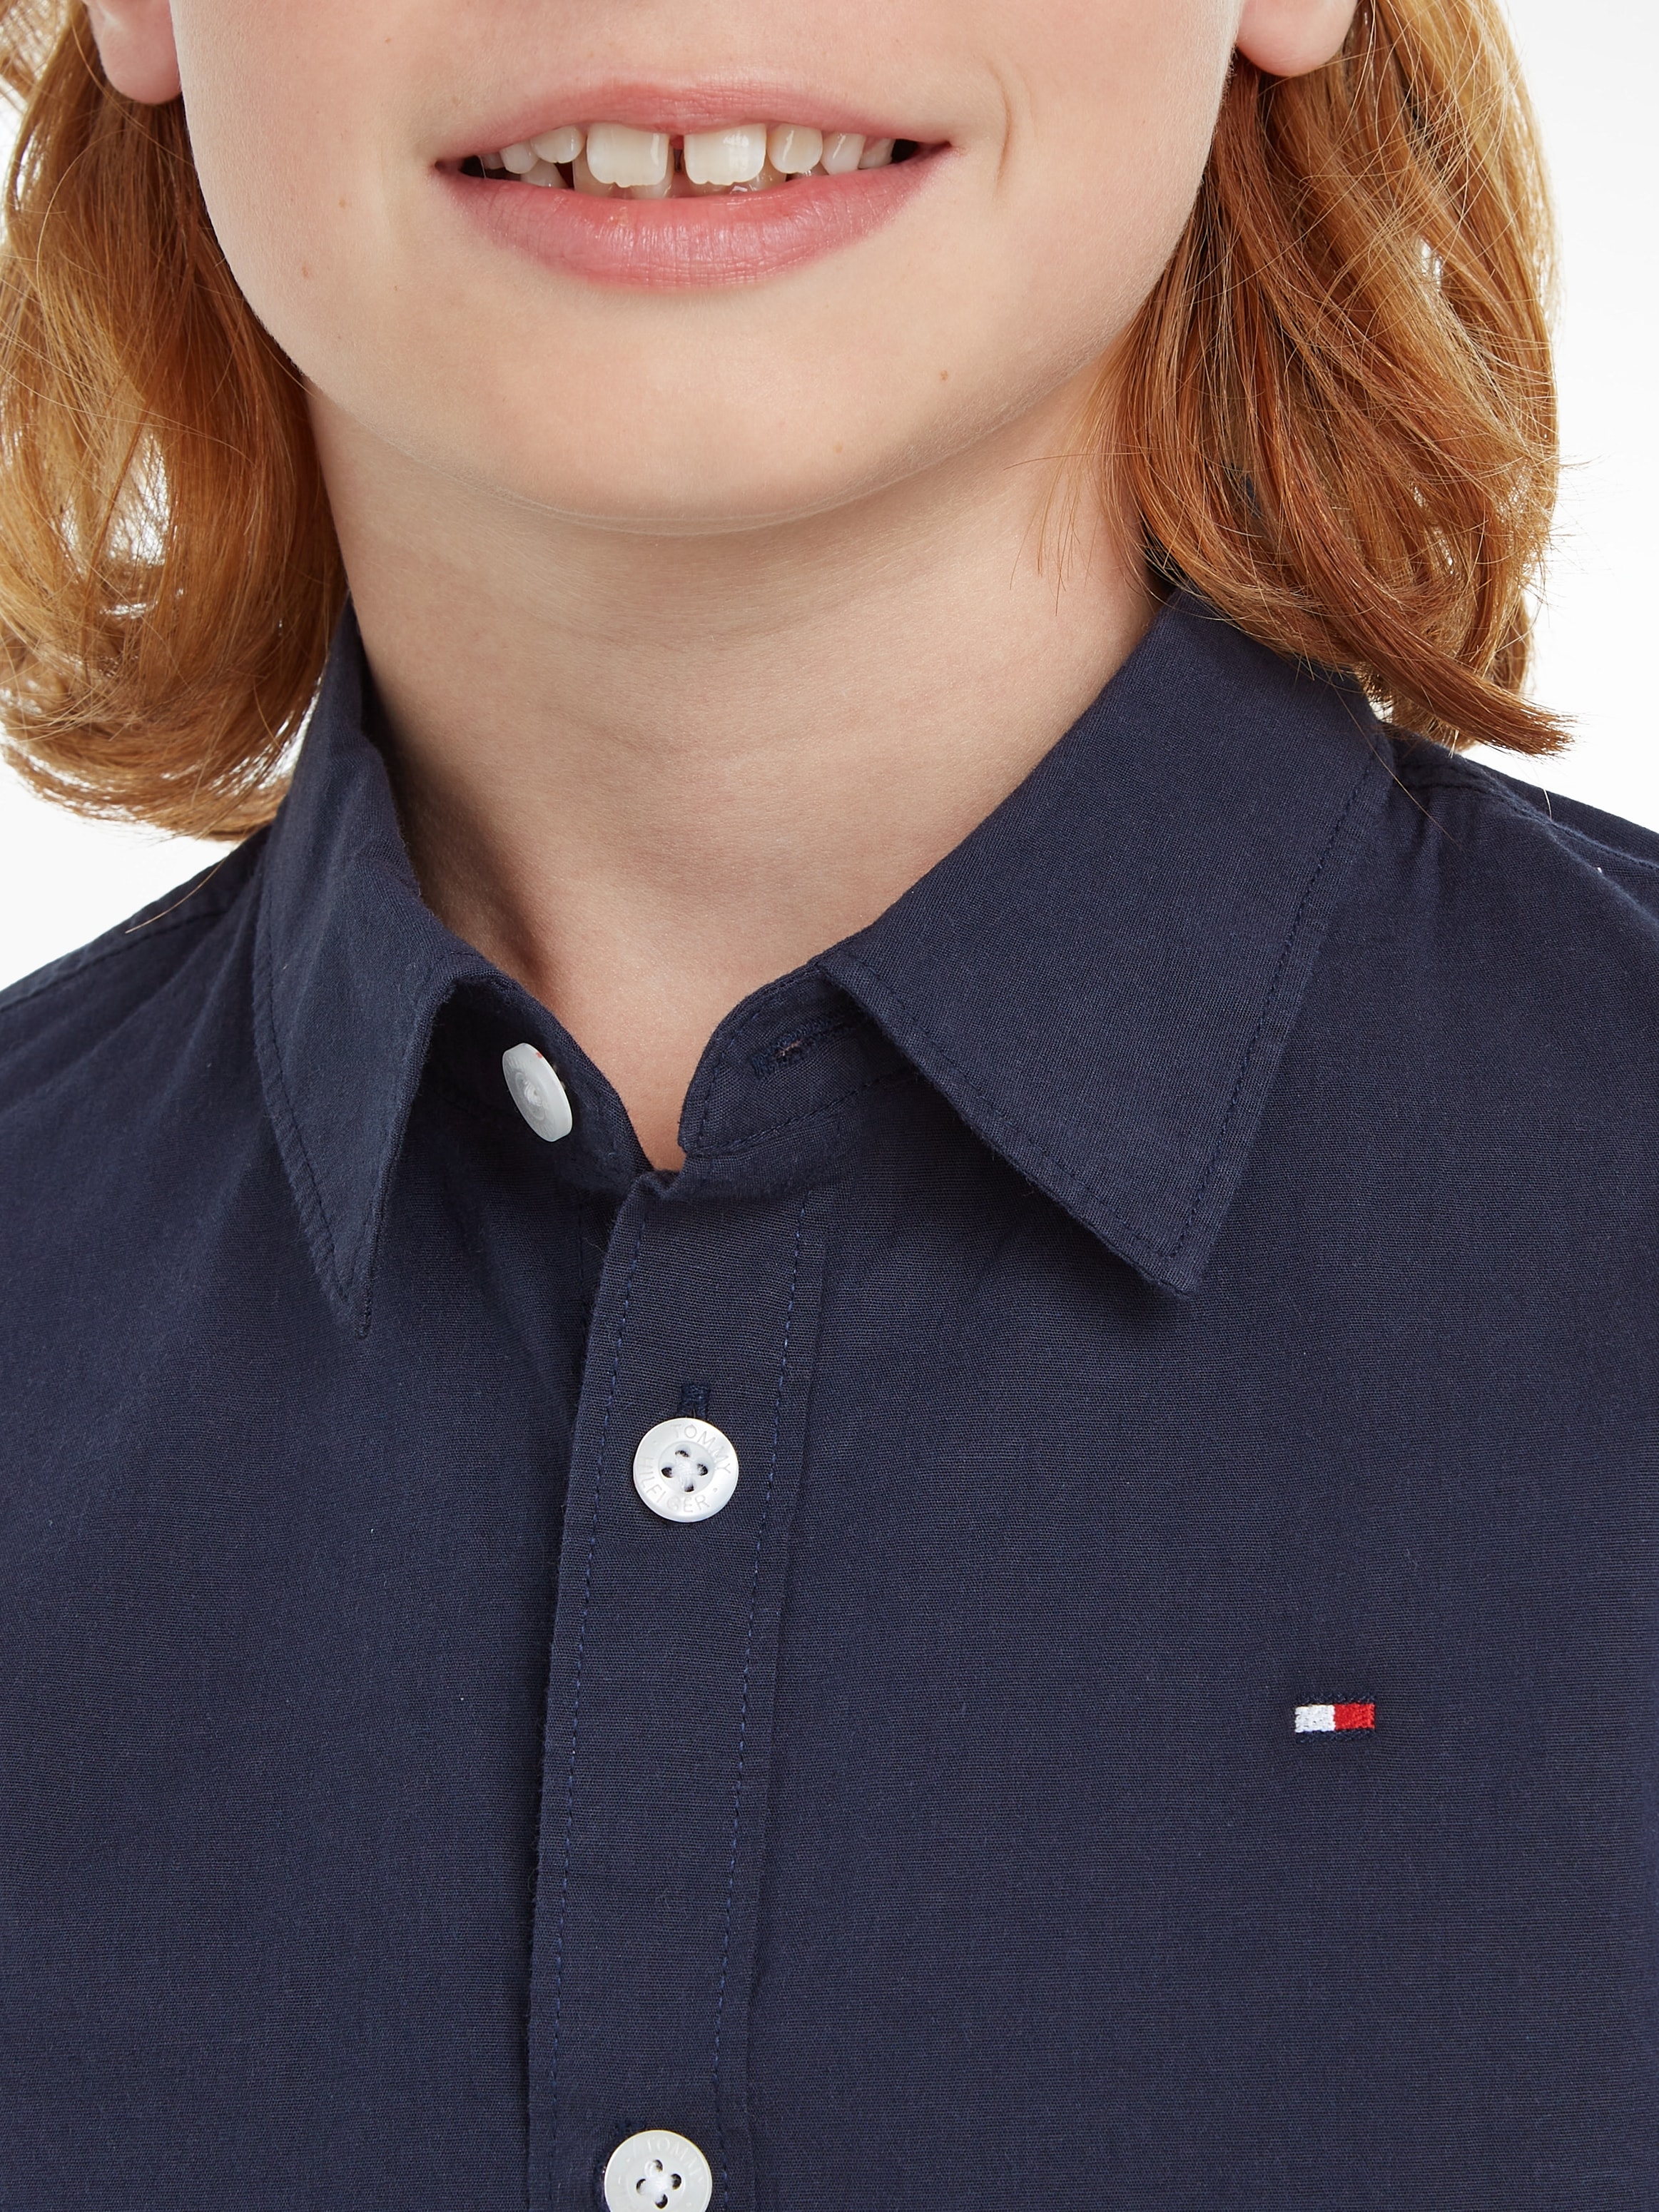 Tommy Hilfiger Langarmhemd »SOLID STRETCH POPLIN SHIRT L/S«, Kinder Kids Junior MiniMe,für Jungen